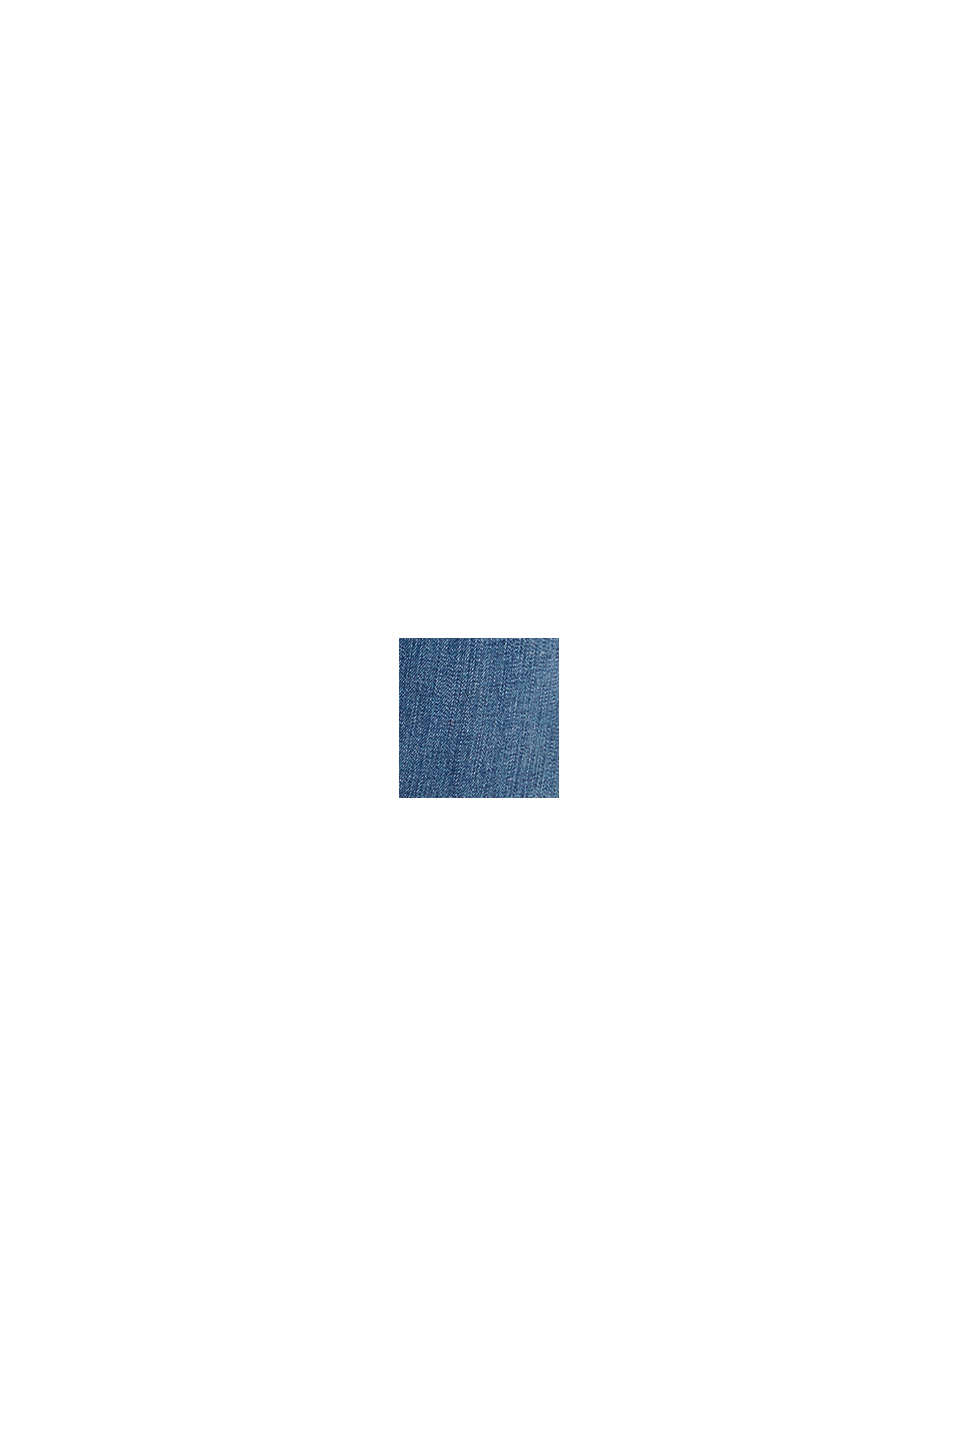 Vaqueros de algodón ecológico con tejido reciclado, BLUE MEDIUM WASHED, swatch